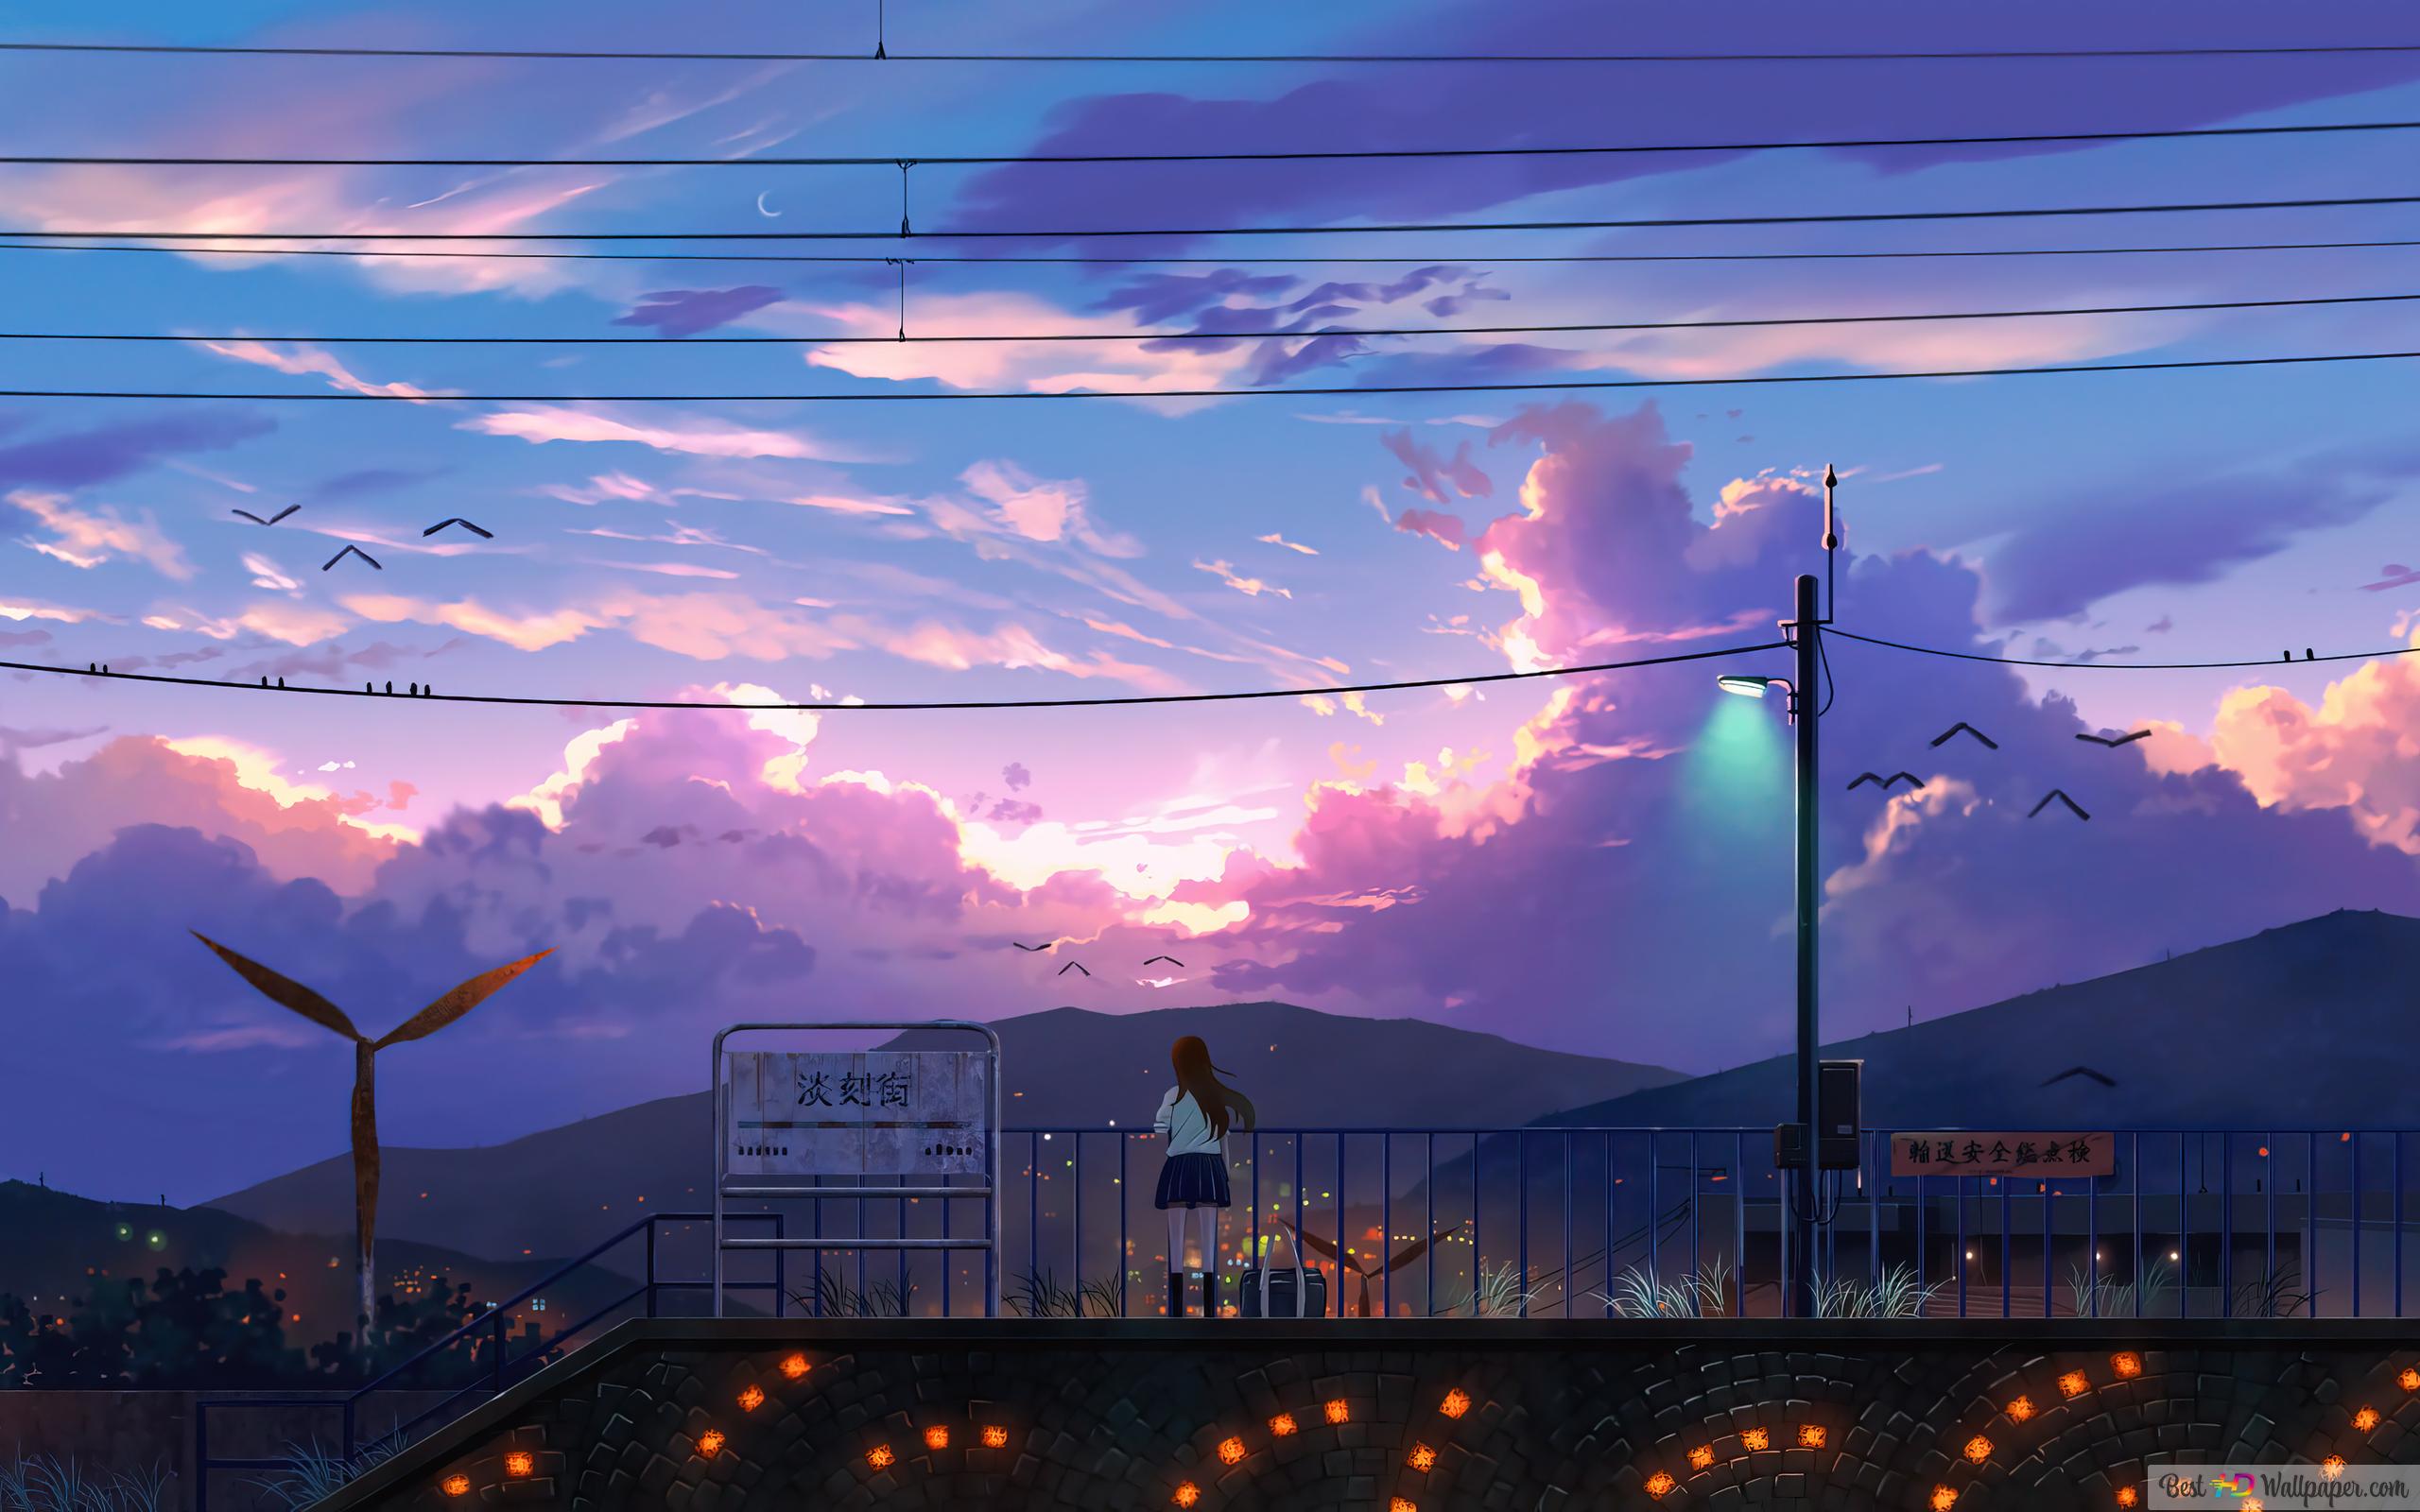 Sunrise Anime Scenery Art 4K wallpaper download